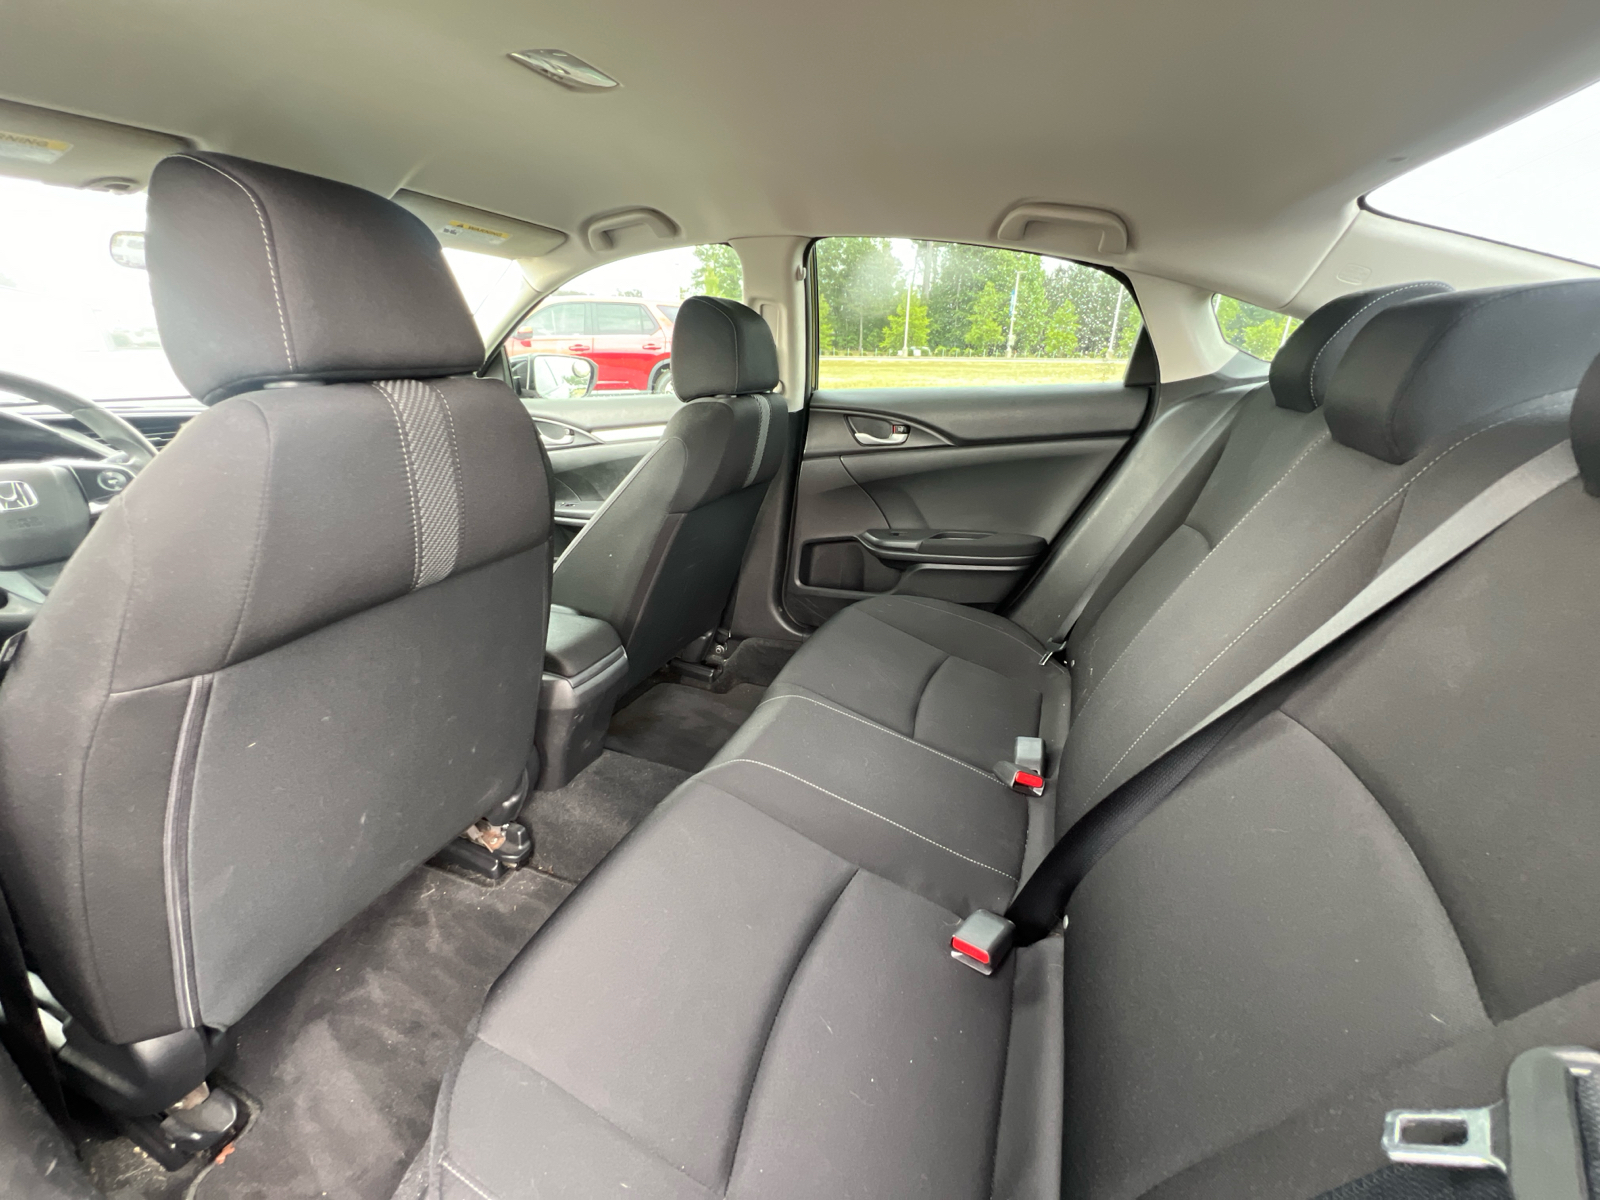 2018 Honda Civic LX 25